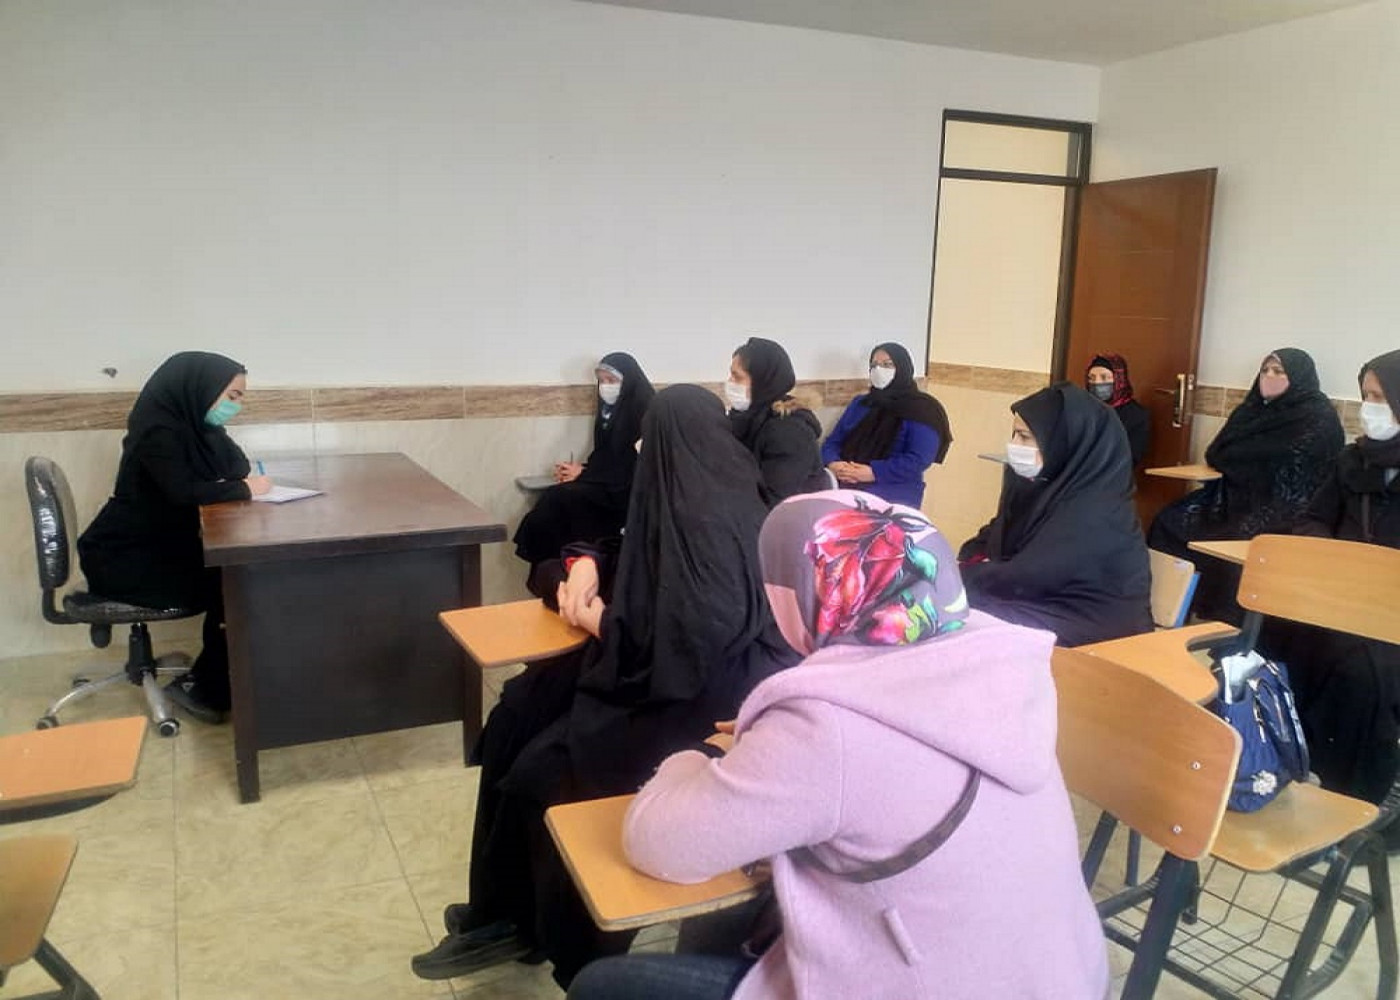 جلسه مشاوره و آموزش عمومی برای متقاضیان مشاغل خانگی در استان آذربایجان شرقی برگزار گردید .